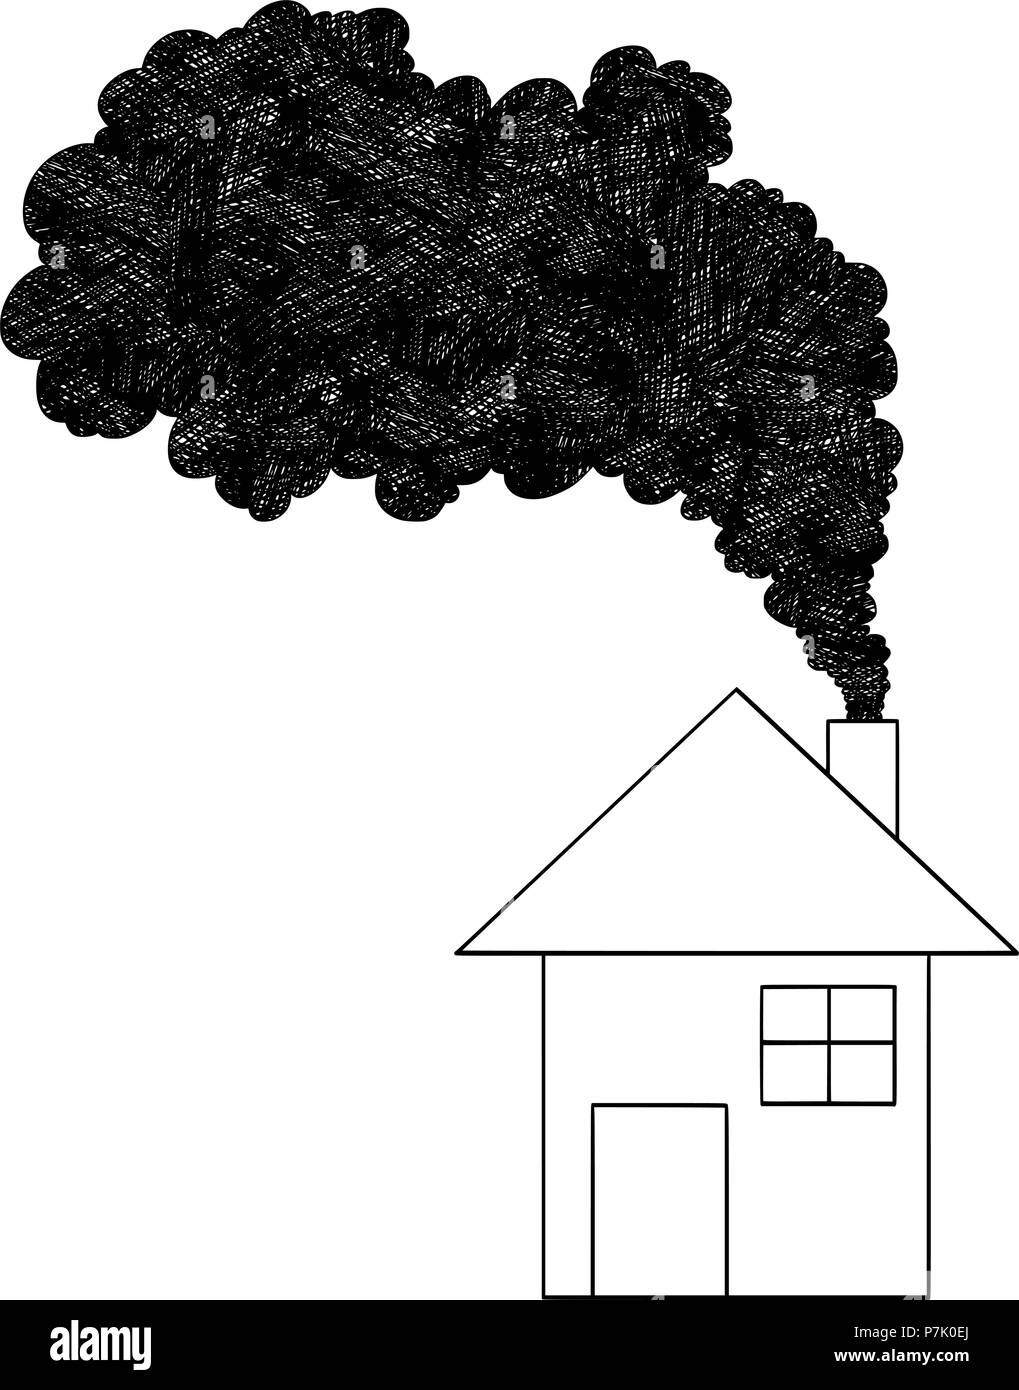 Vektor Künstlerische Zeichnung Abbildung: Rauch aus dem Schornstein, Luftverschmutzung Konzept Stock Vektor